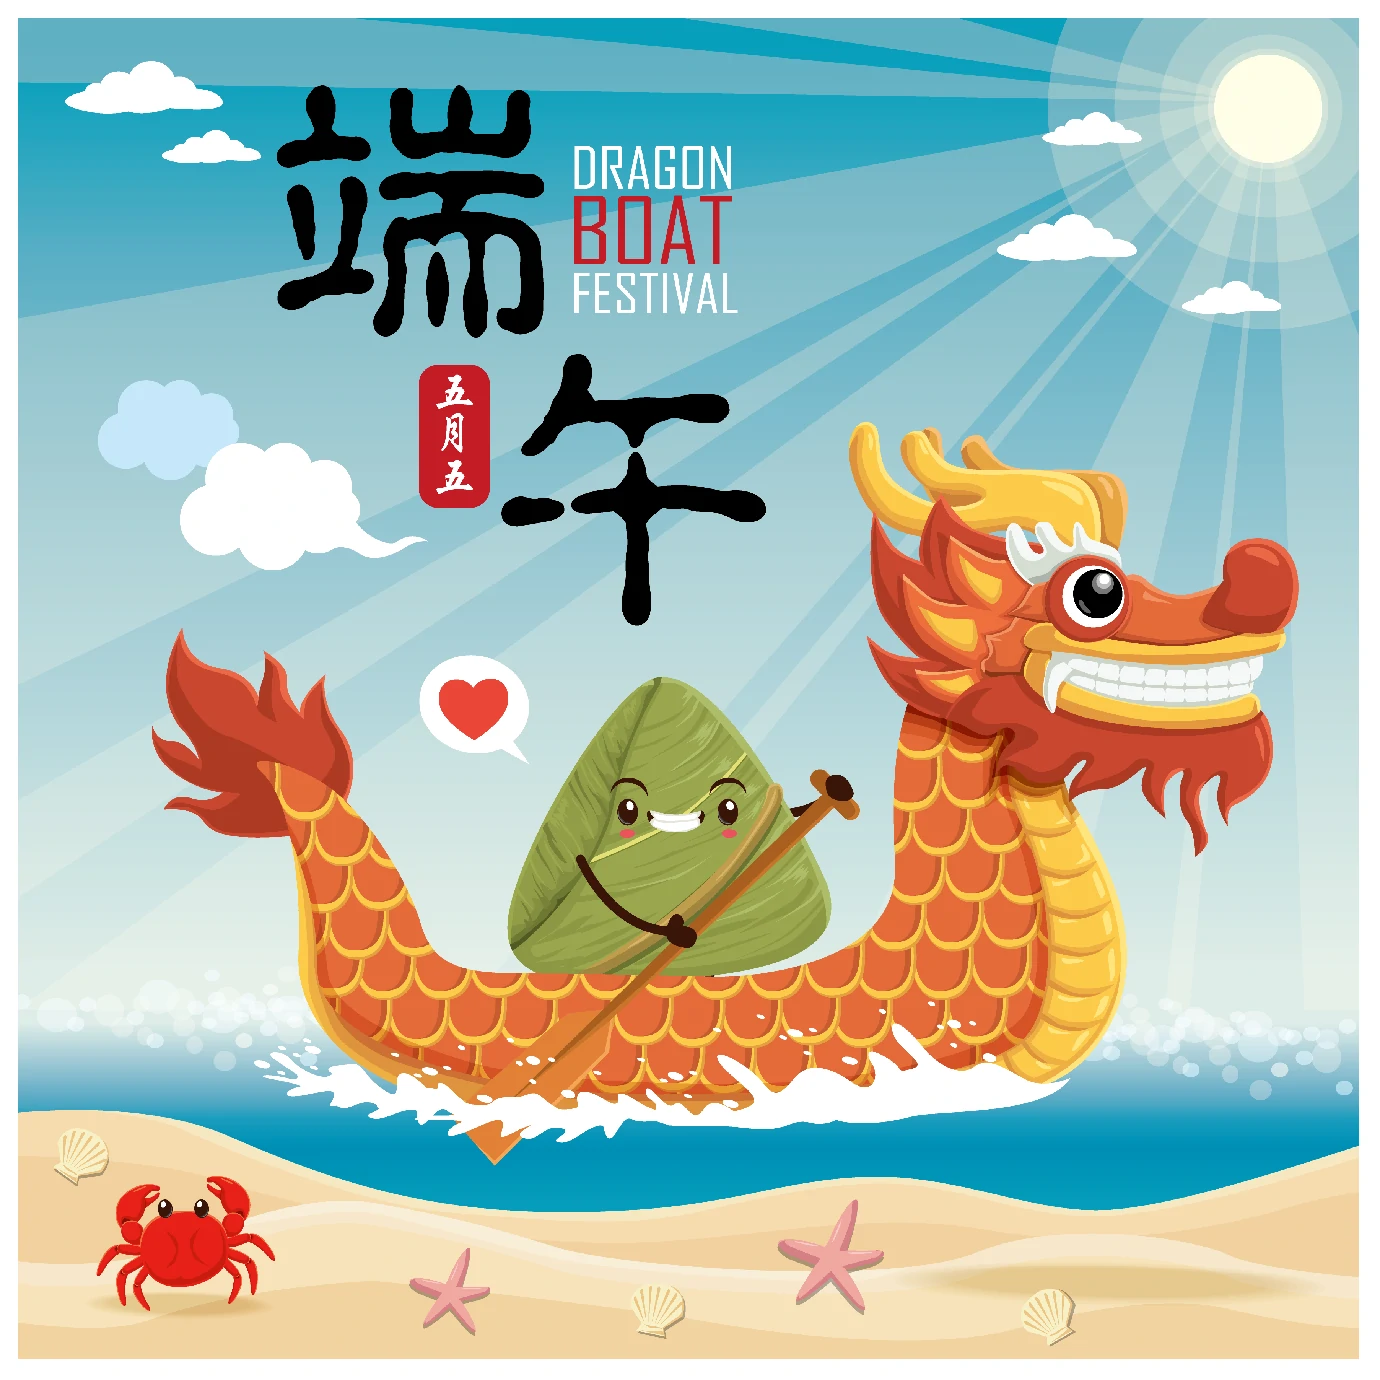 中国传统节日卡通手绘端午节赛龙舟粽子插画海报AI矢量设计素材【026】